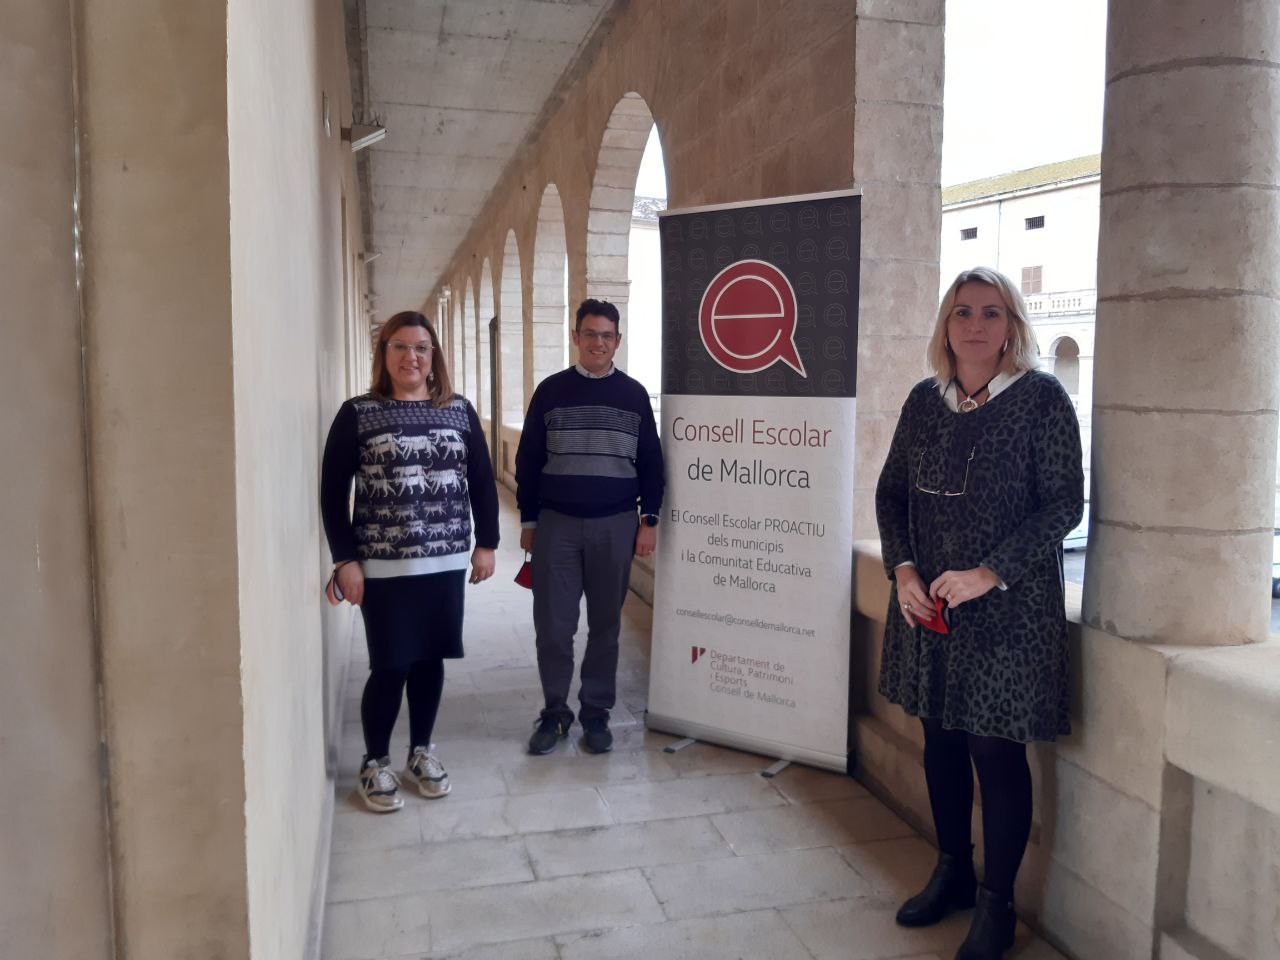 Bel Busquets, Joan Ramon Xamena i Martina PerelLó (secretària del Consell Escolar de Mallorca)